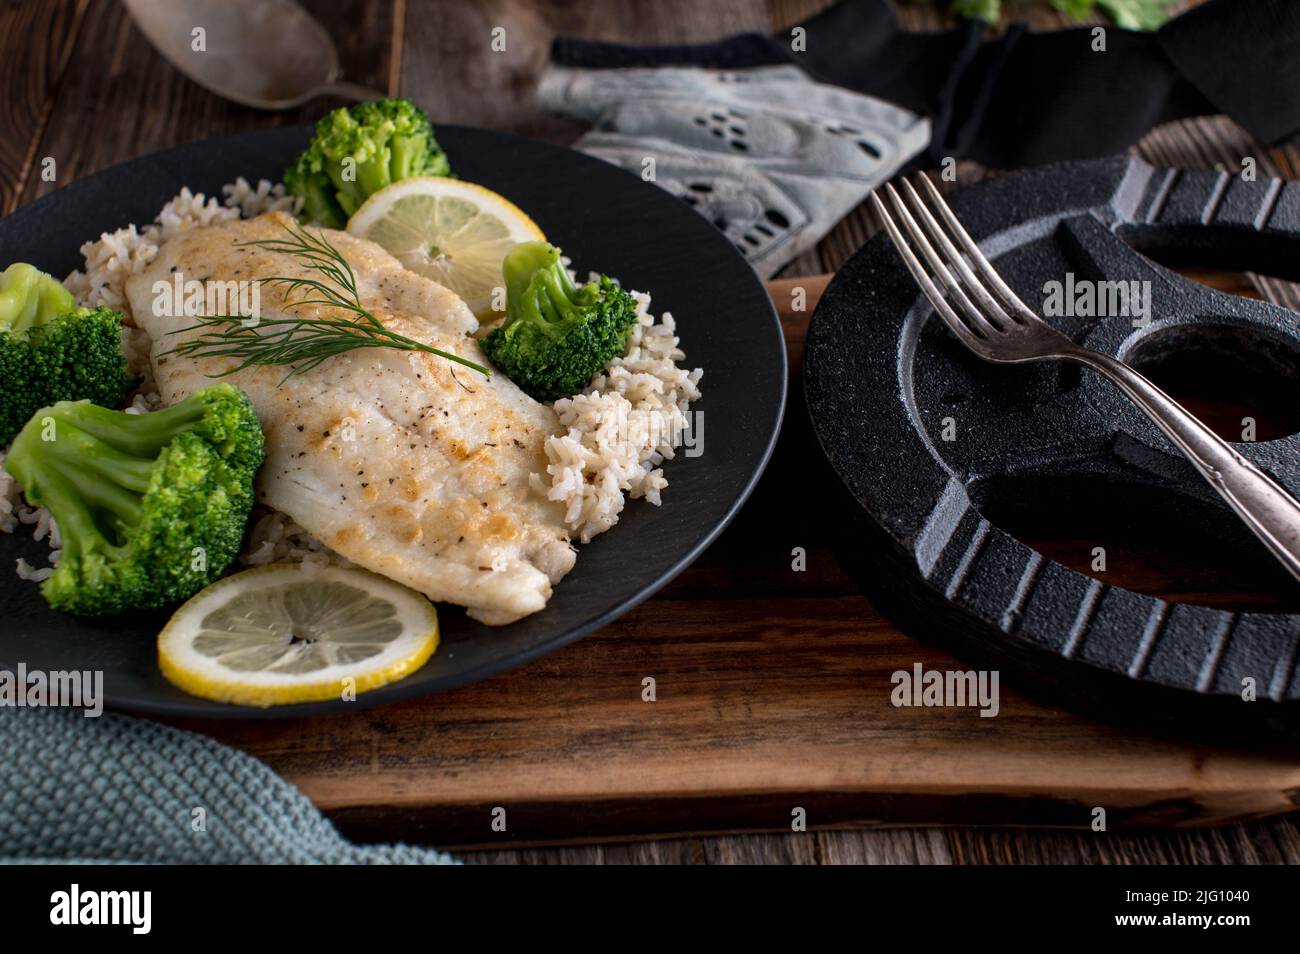 Muskelaufbau Mahlzeit mit gebratenen Fischfilet, braunem Reis und Brokkoli. Serviert auf einem dunklen Teller mit Hantel auf einem Holztisch Stockfoto